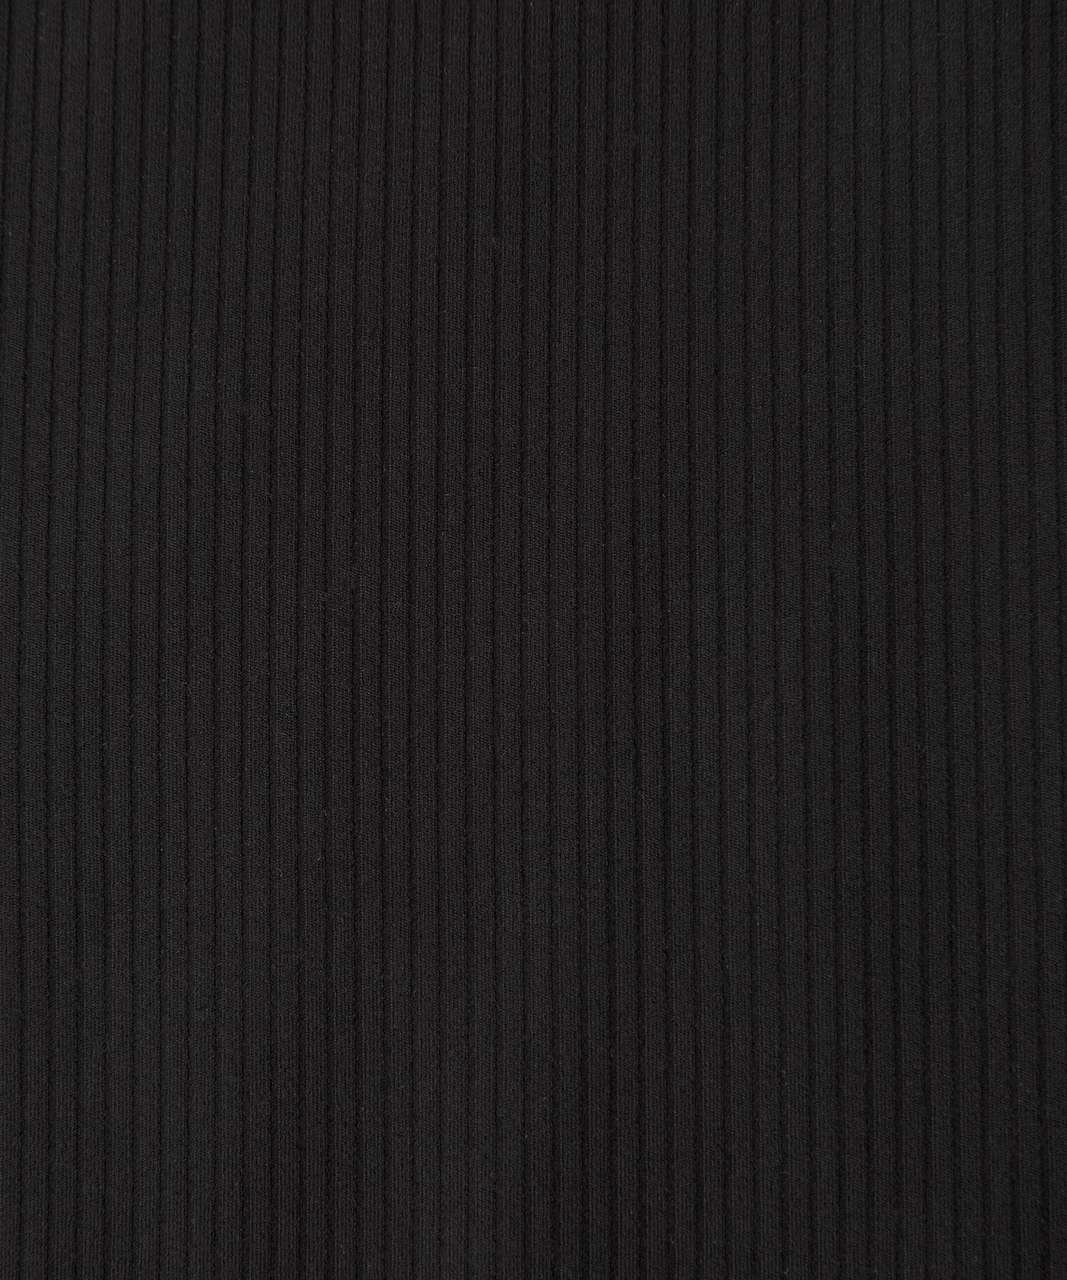 Lululemon All Aligned Ribbed Midi Dress - Black